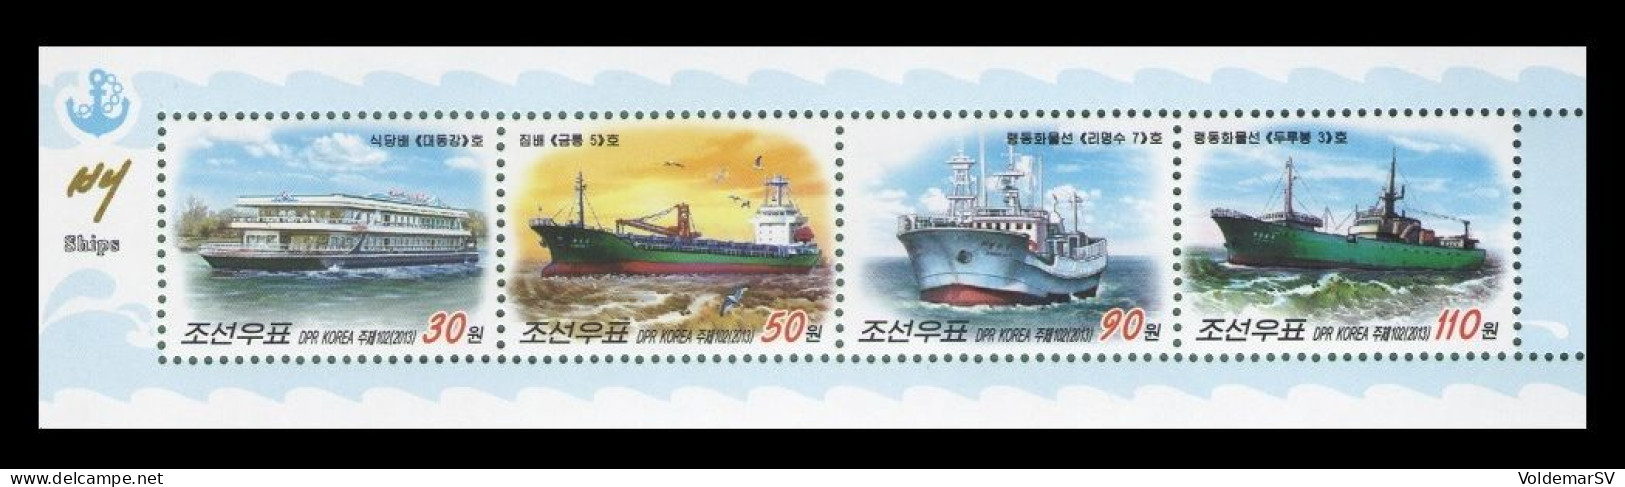 North Korea 2013 Mih. 6033/36 Ships (booklet Sheet) MNH ** - Korea, North